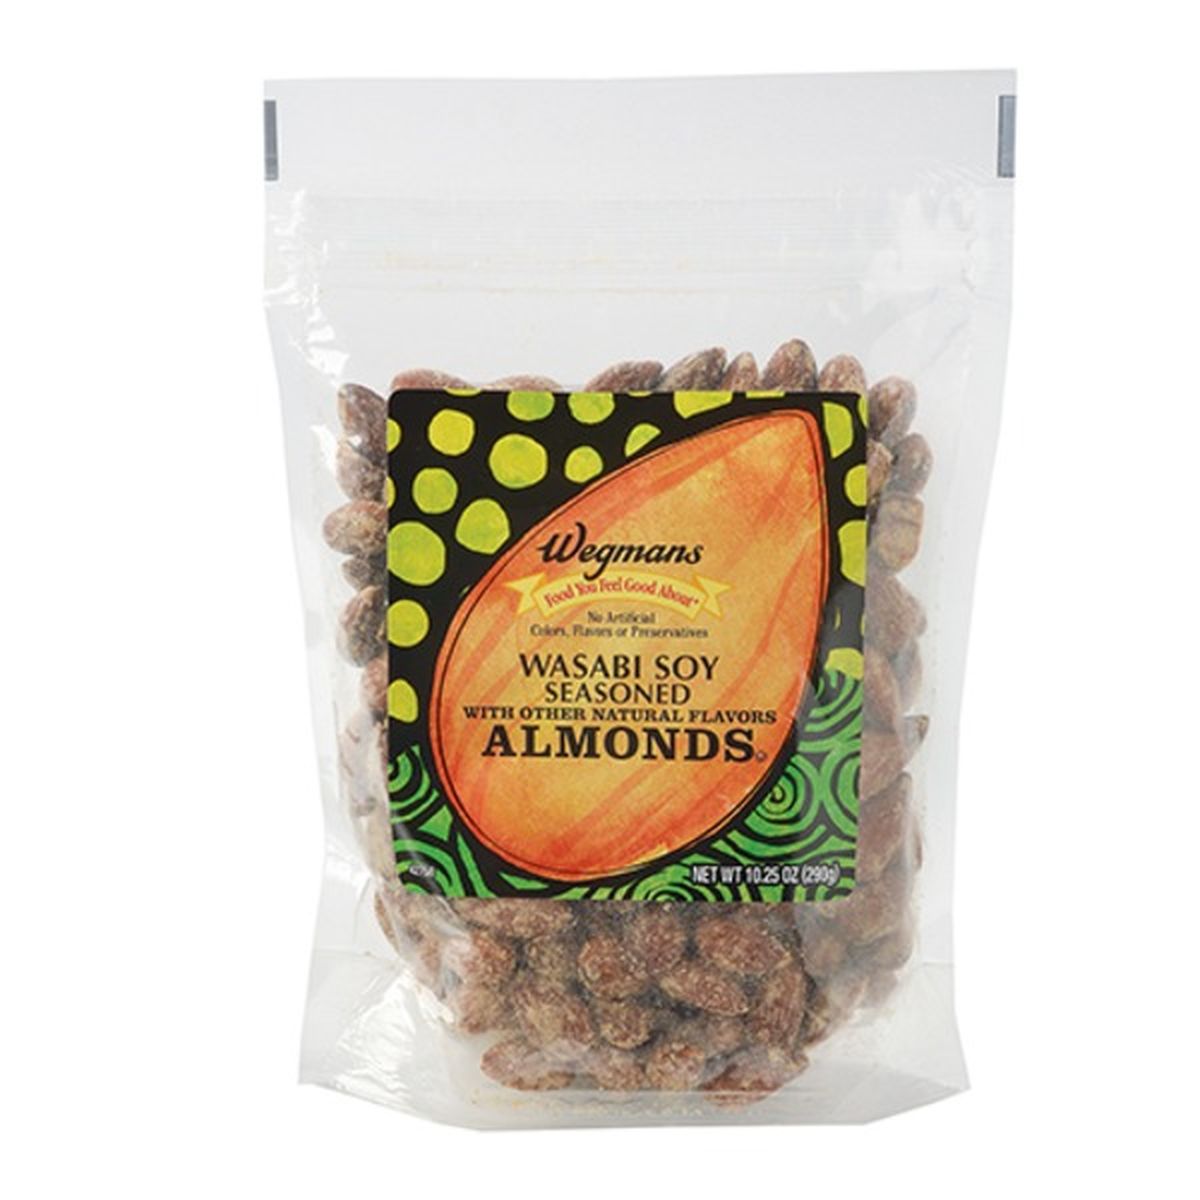 Calories in Wegmans Wasabi Soy Seasoned Almonds